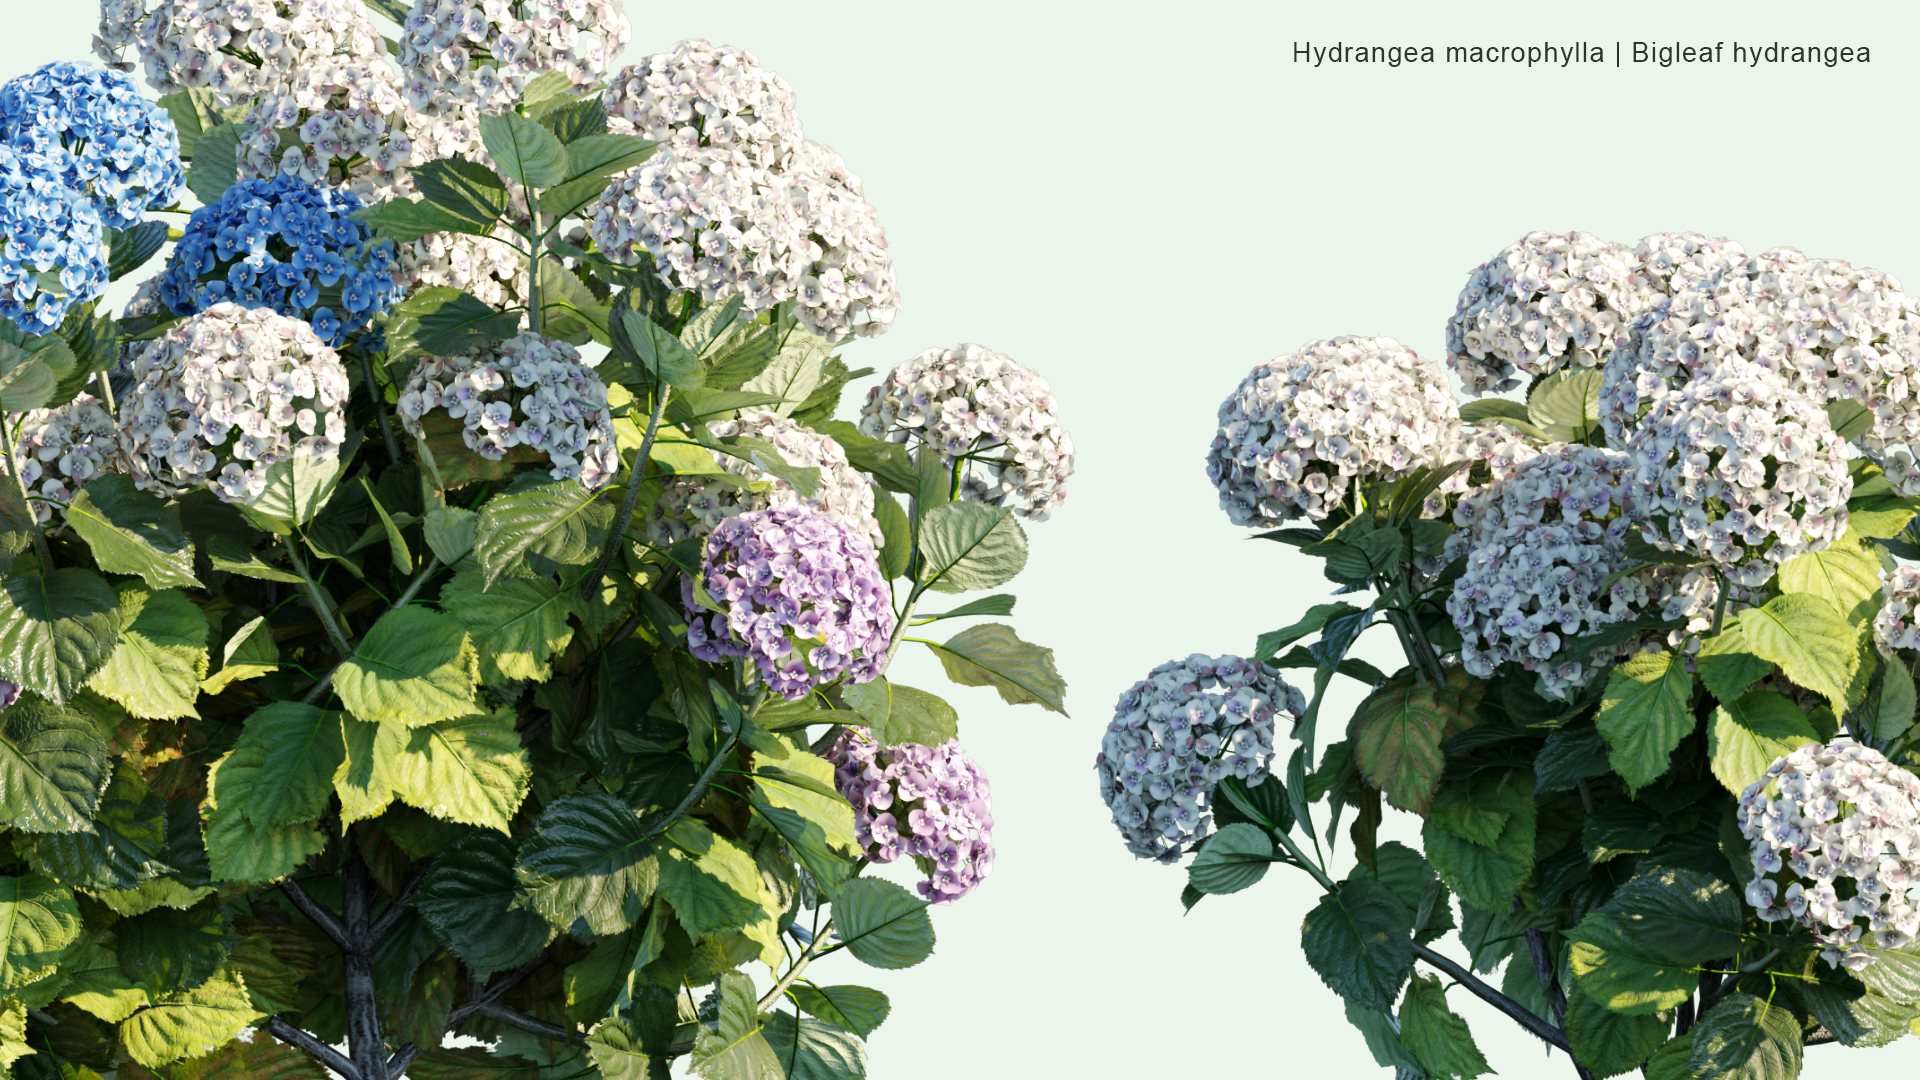 2D Hydrangea Macrophylla - Bigleaf Hydrangea, French Hydrangea, Lacecap Hydrangea, Mophead Hydrangea, Penny Mac, Hortensia